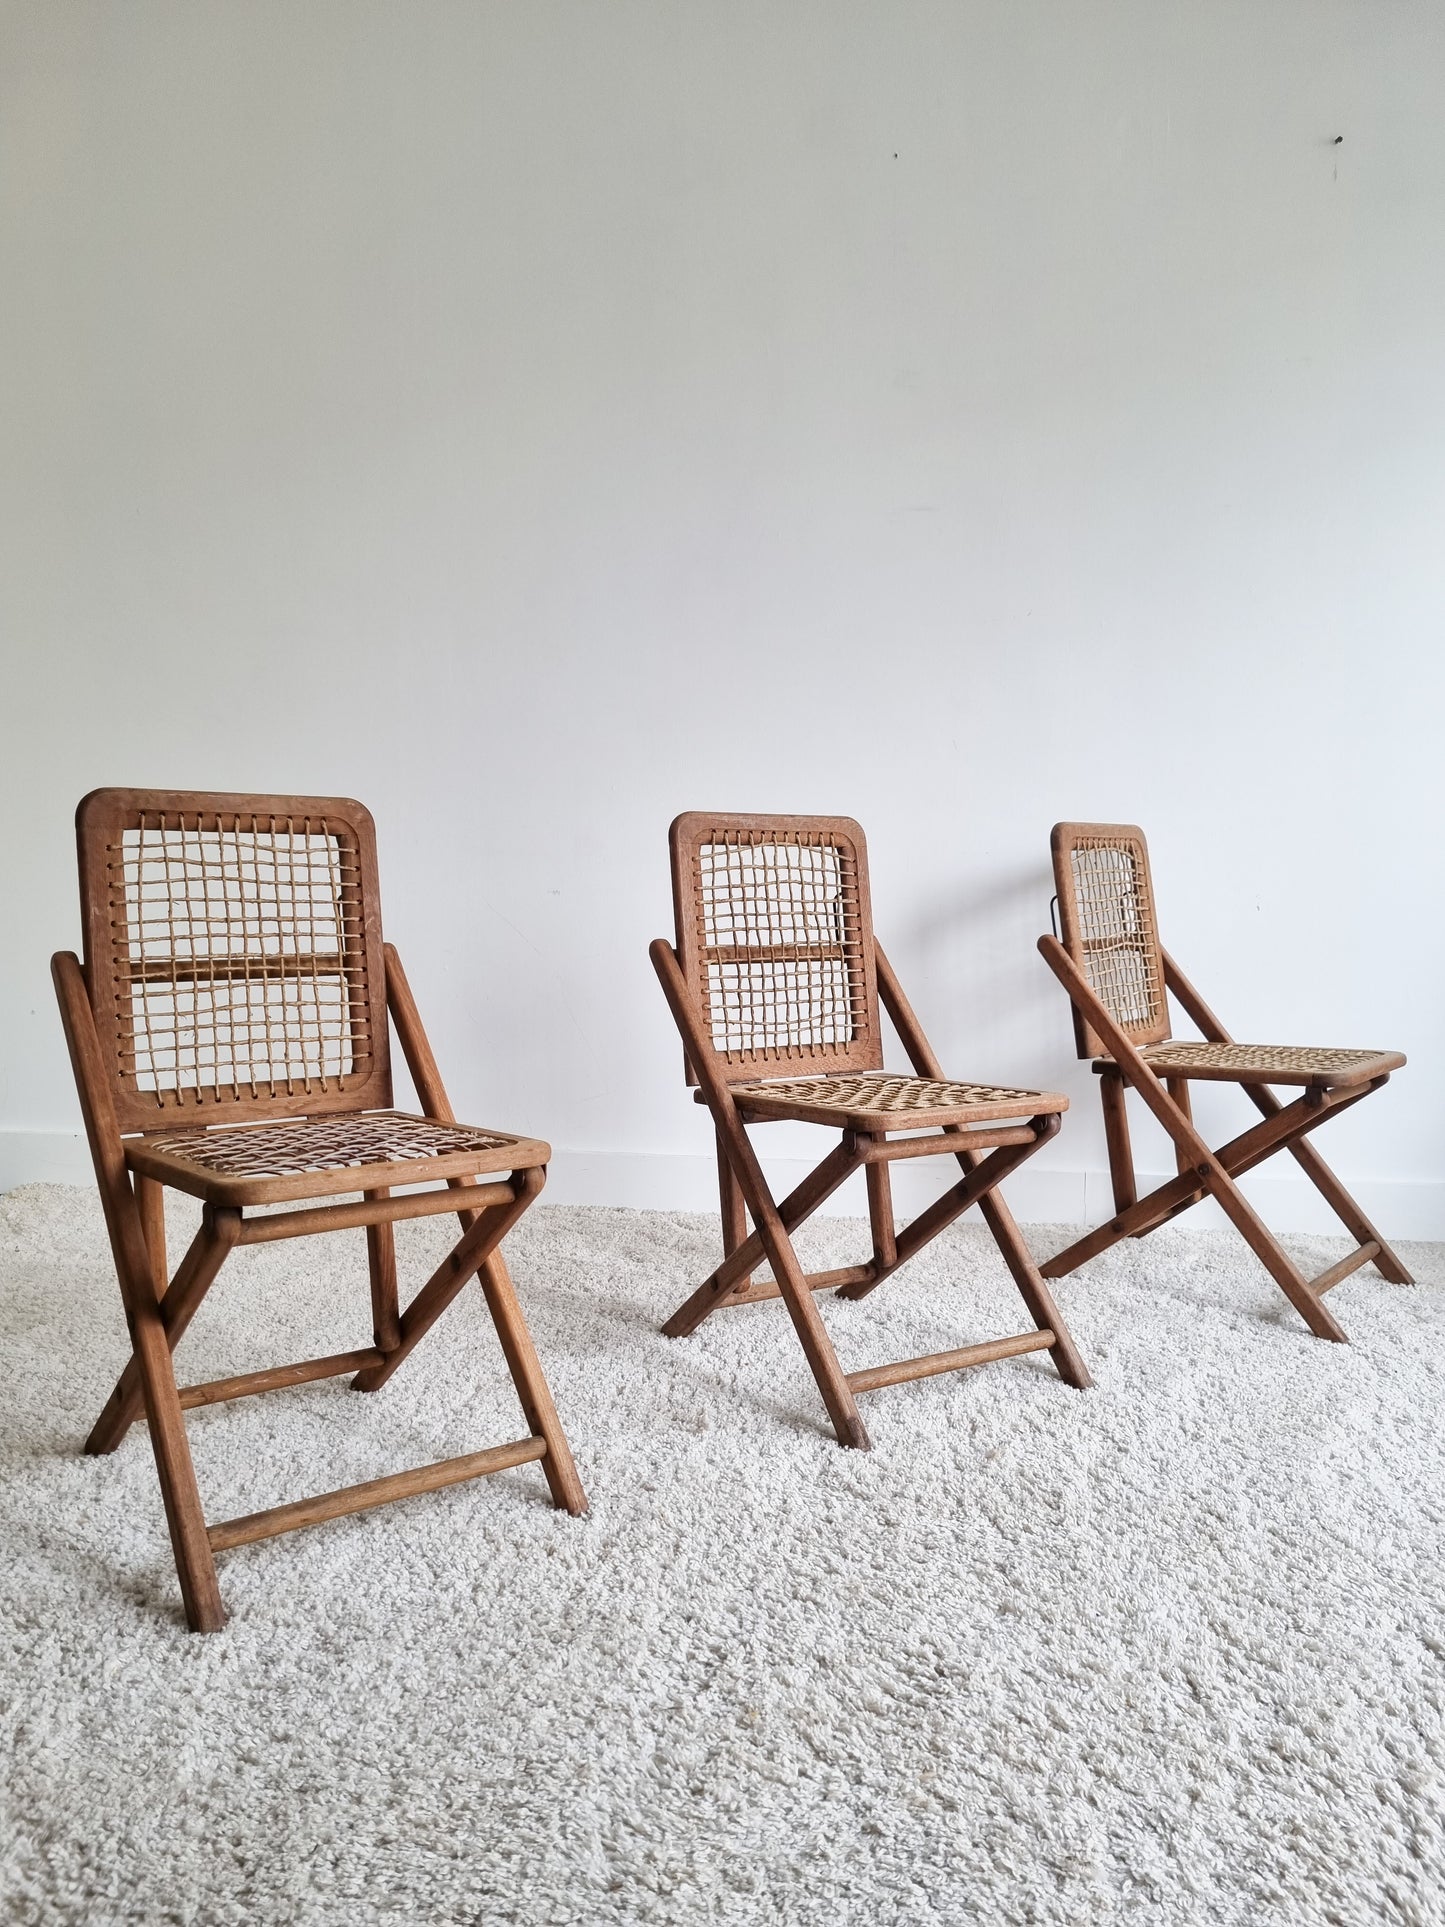 Ensemble de 4 chaises pliantes bois et corde